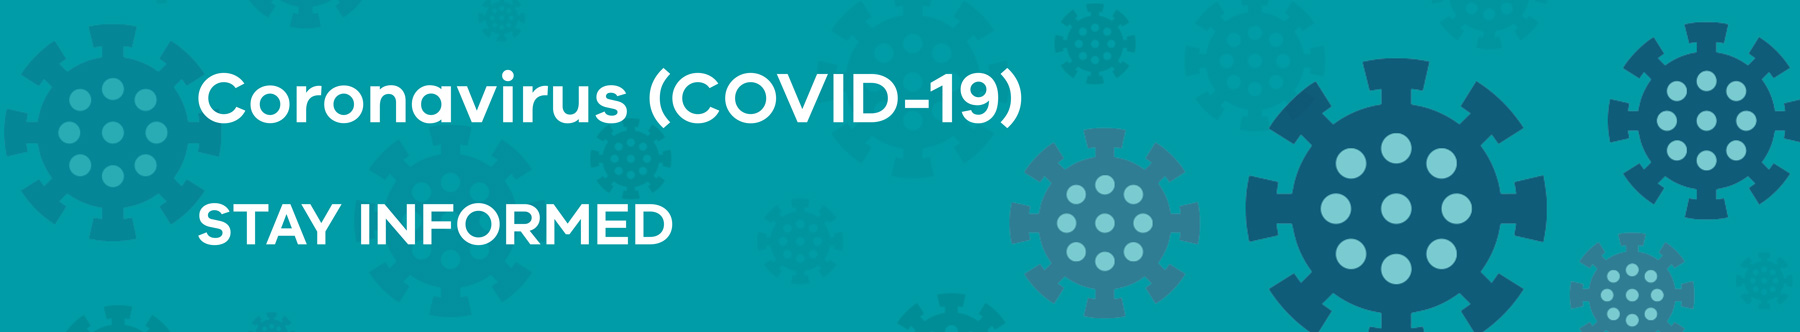 Coronavirus (COVID-19) update graphic